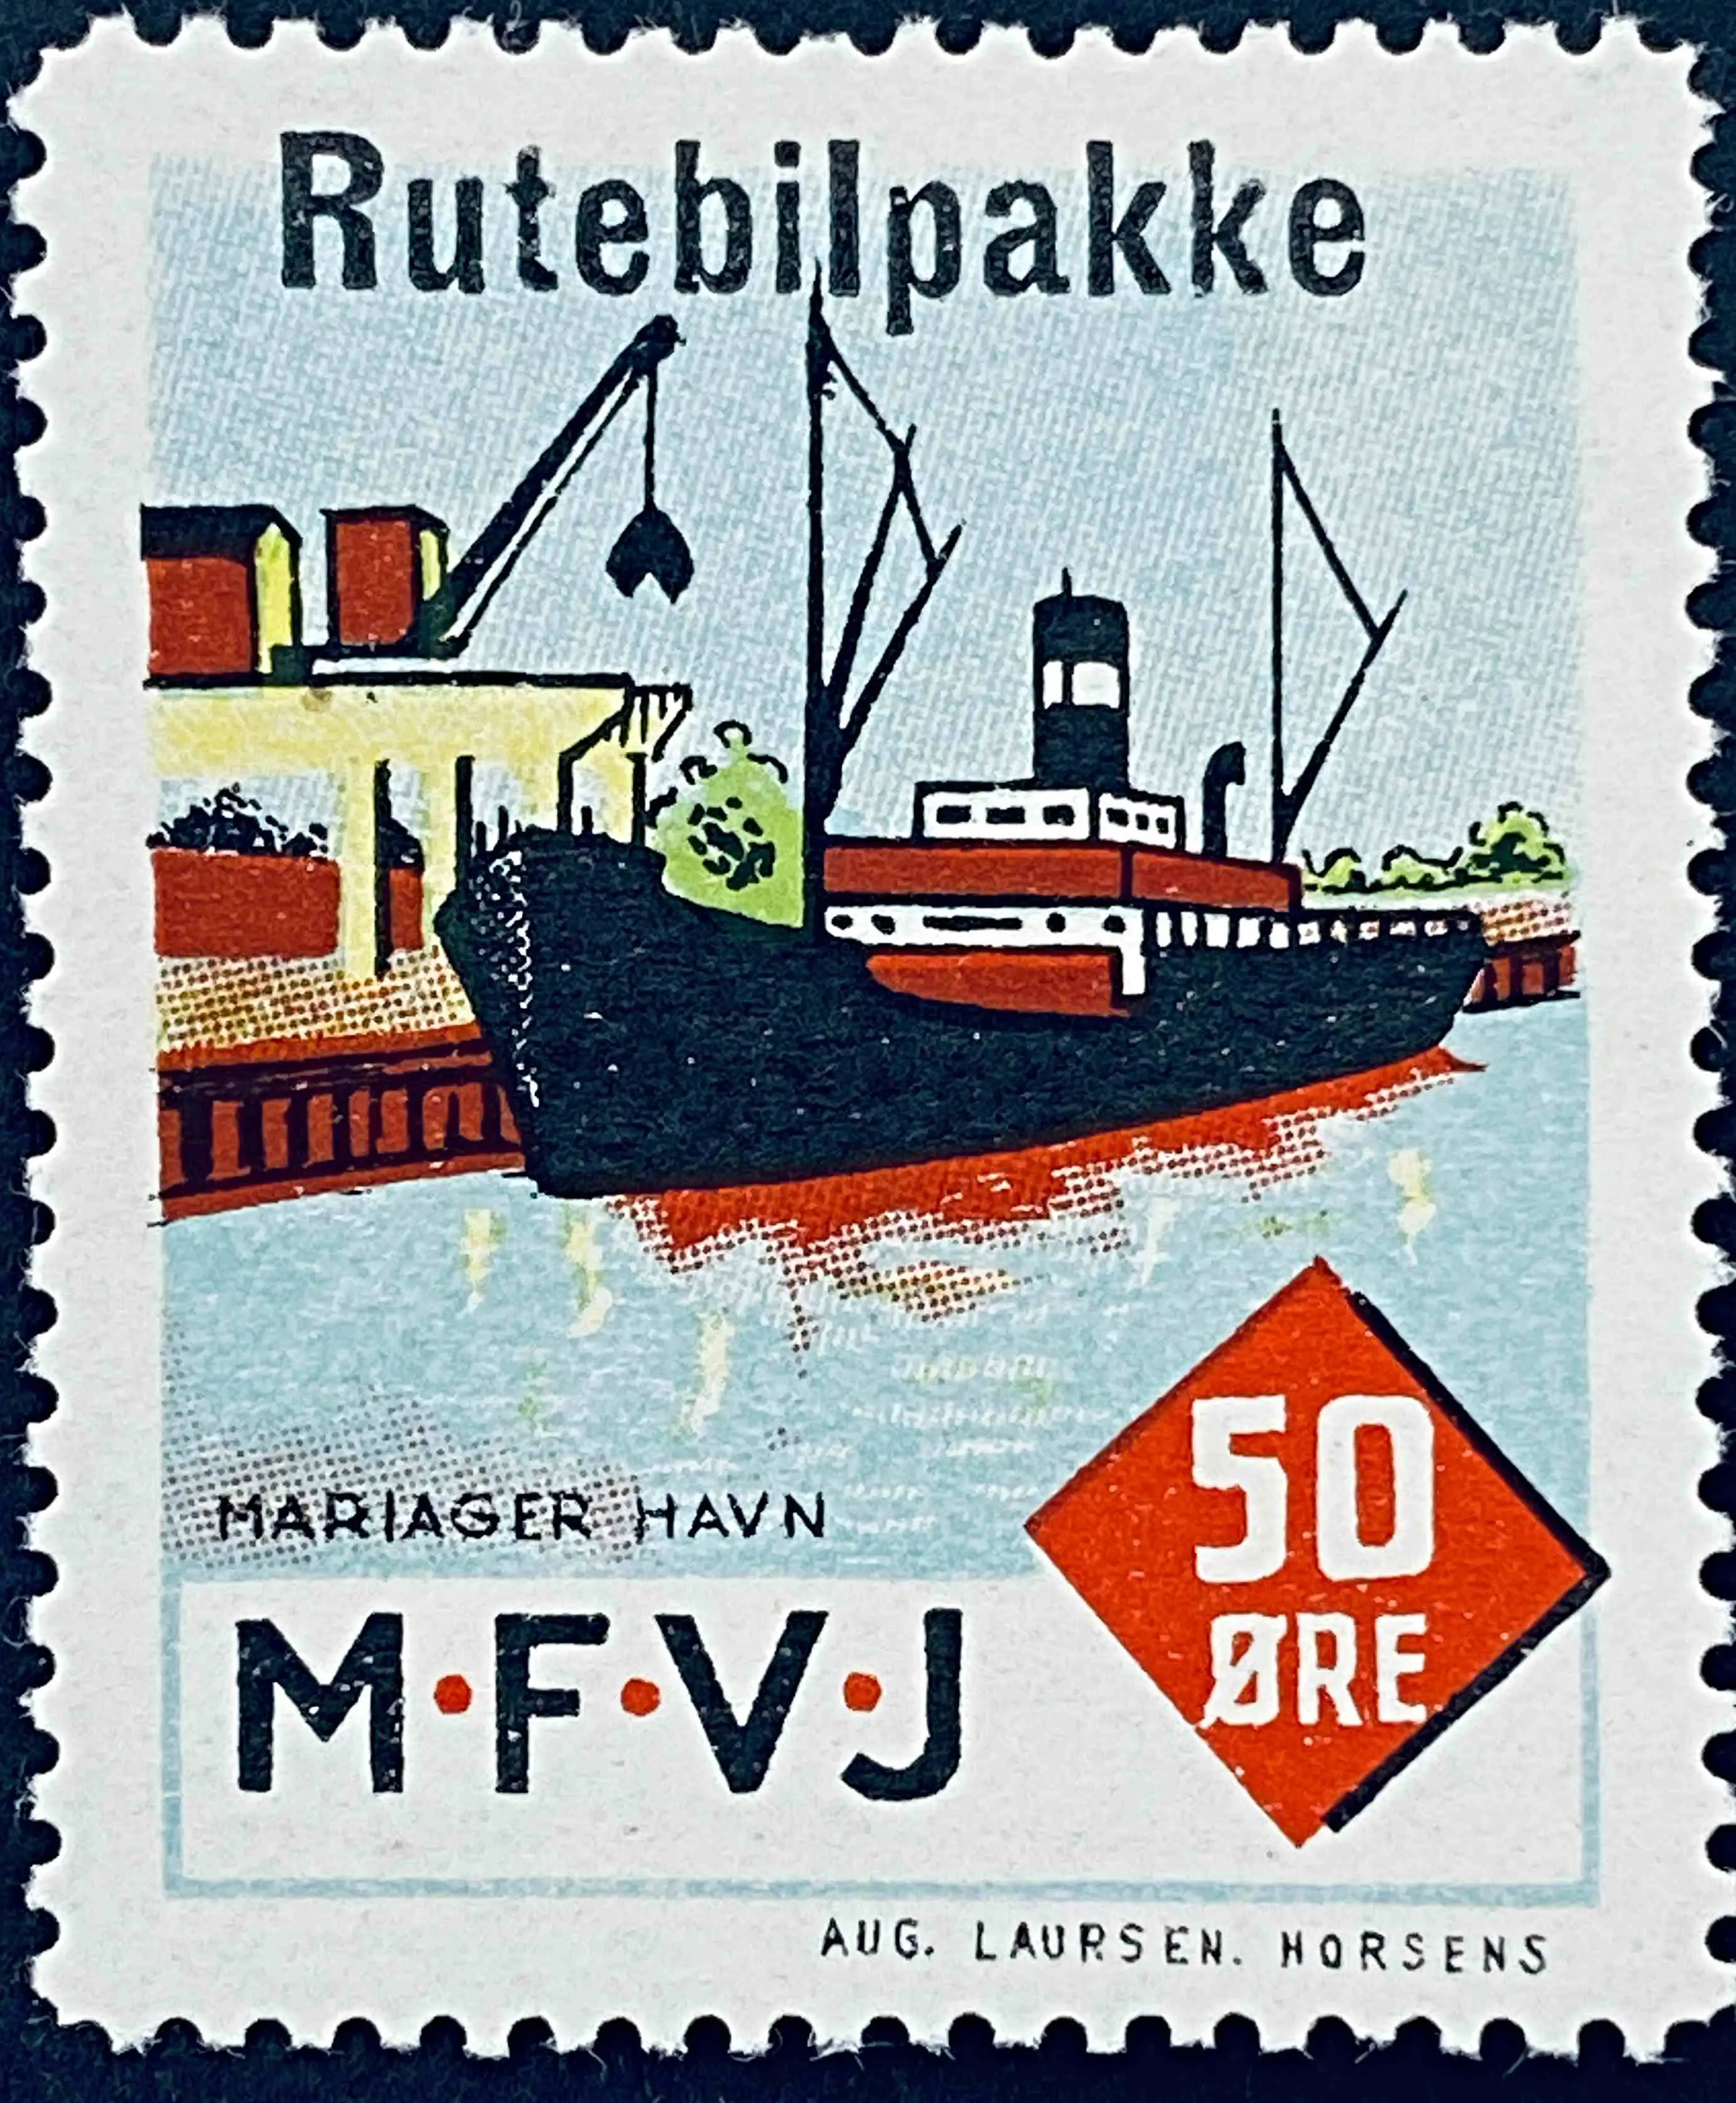 MFVJ R1 - Provisorium (overtryk) "Rutebilpakke" på 50 Øre Motiv: Mariager Havn - Flerfarvet - trykkeri: Aug. Laursen: Horsens.